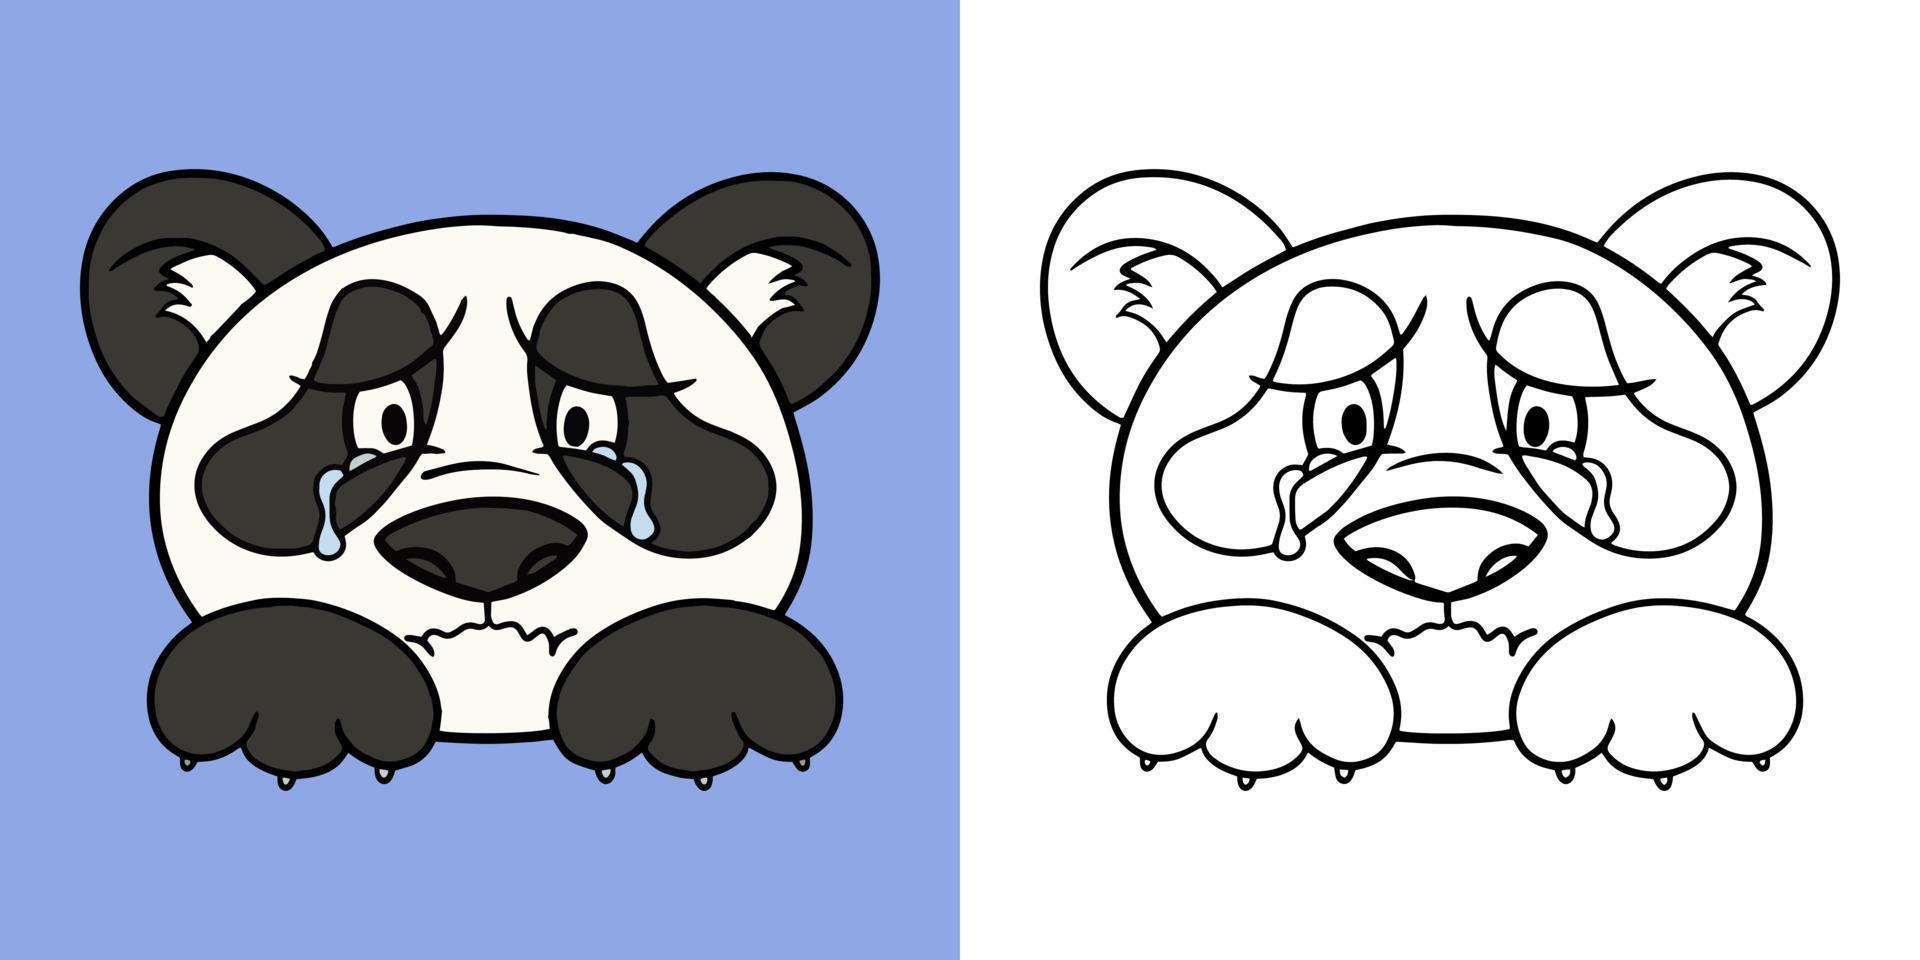 personagem panda chorando, estilo cartoon, conjunto horizontal de ilustrações para livros de colorir, ilustração vetorial vetor